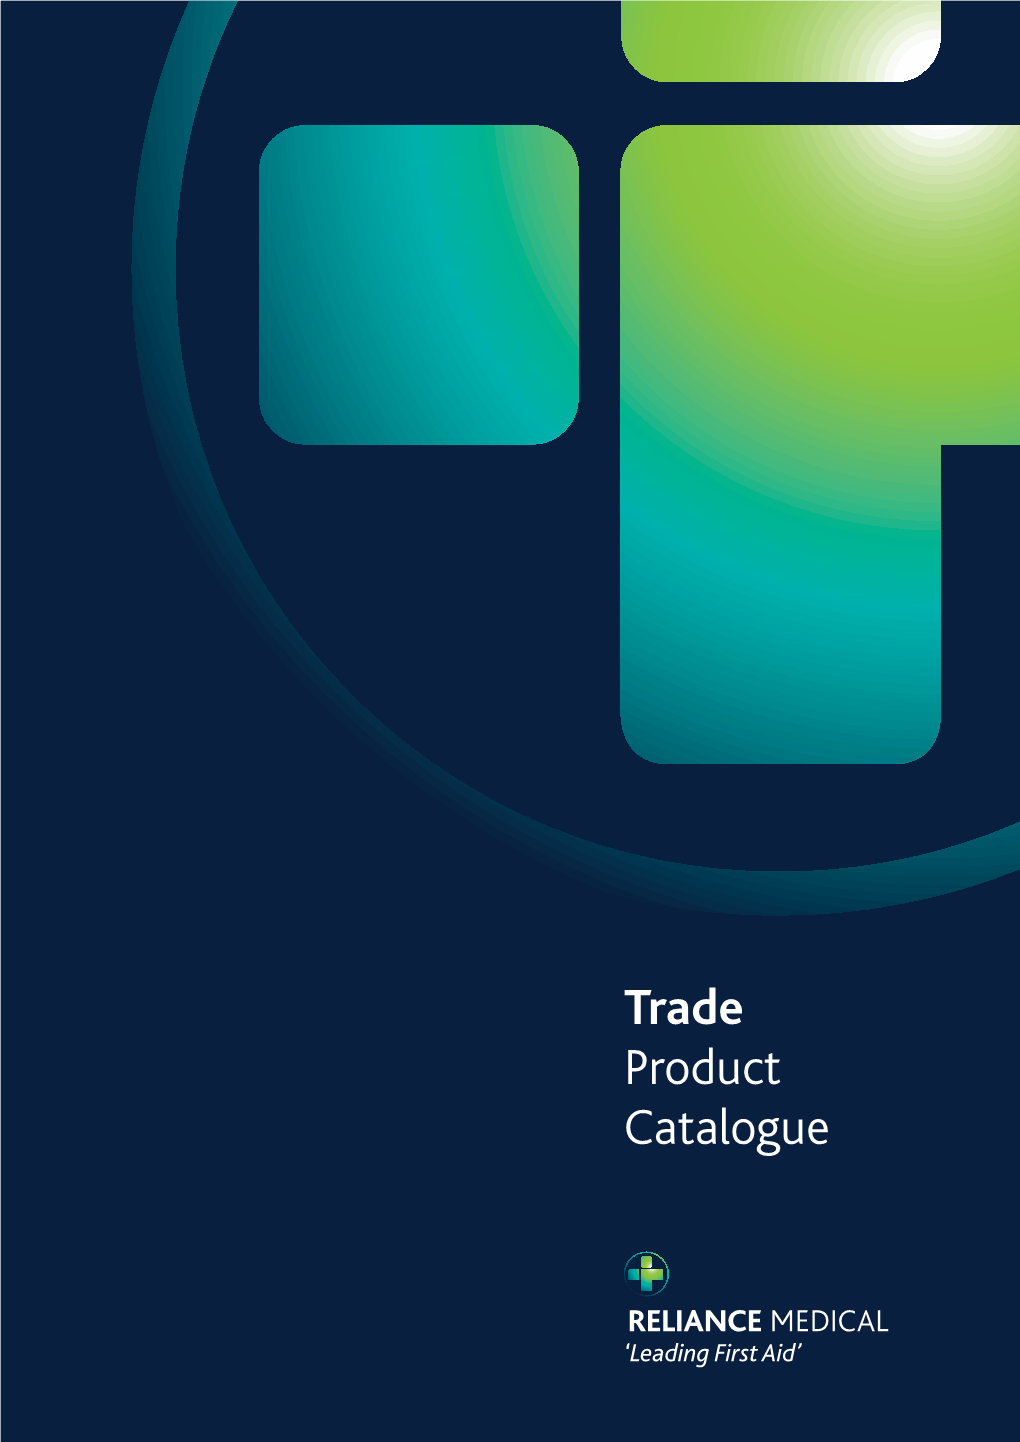 Trade Product Catalogue Trade Product Catalogue